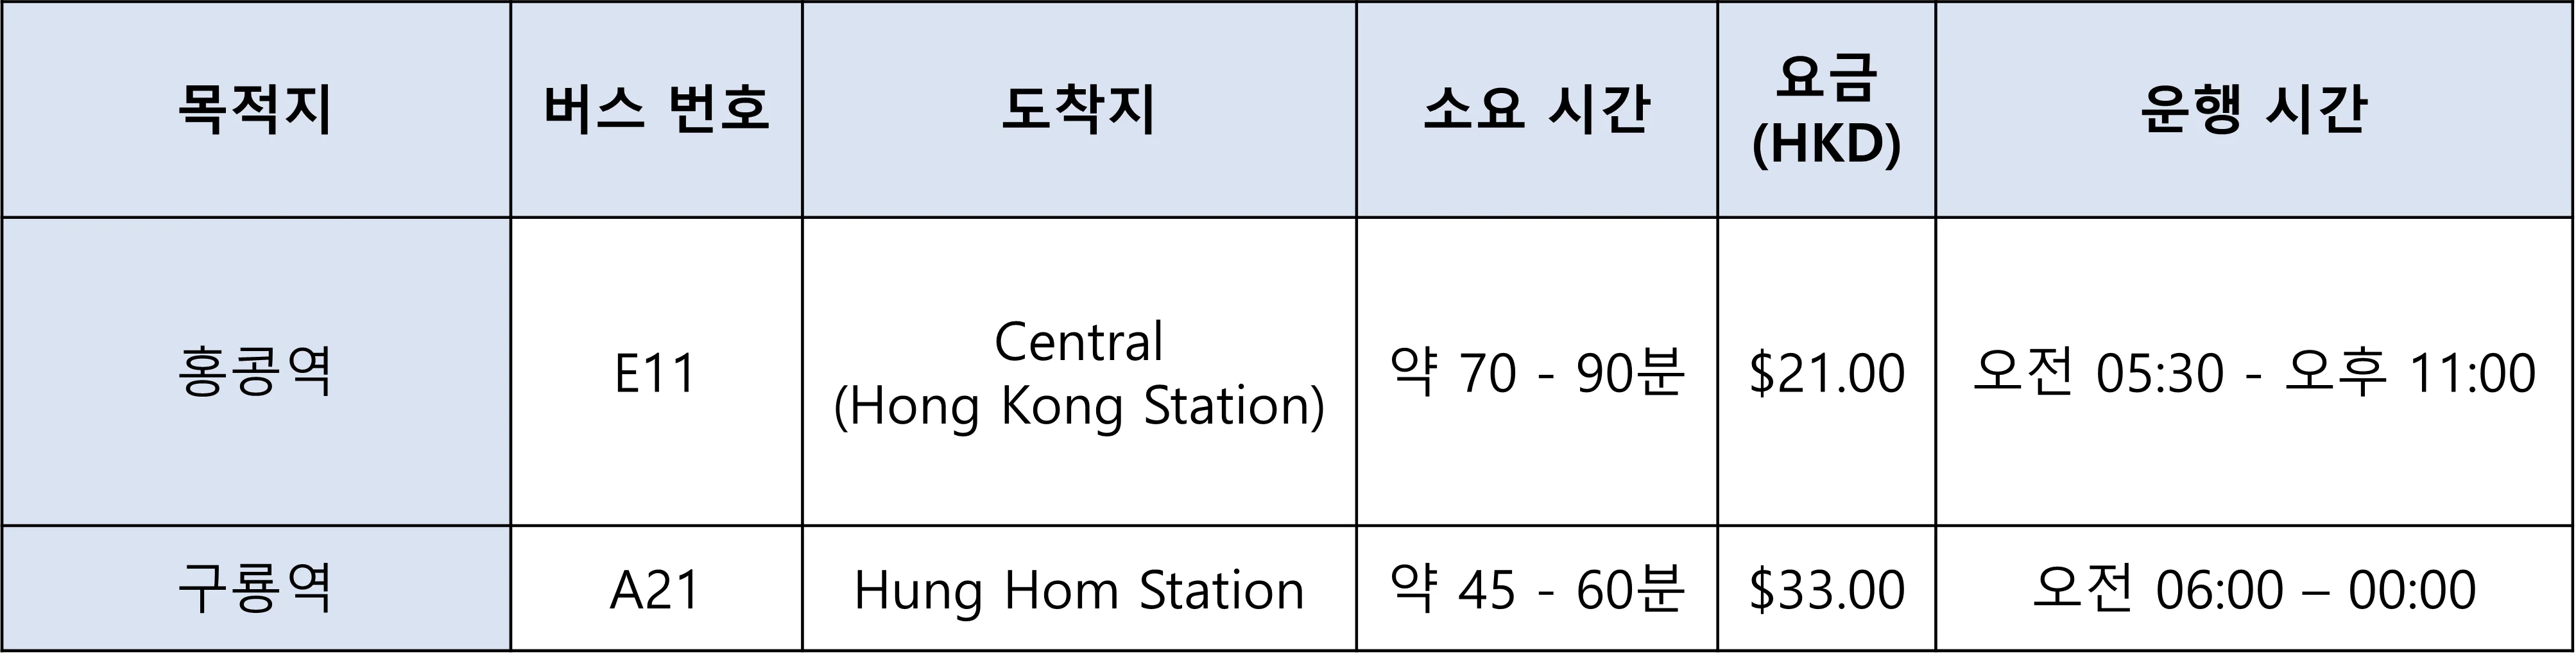 홍콩 시티버스 요금 및 이동시간